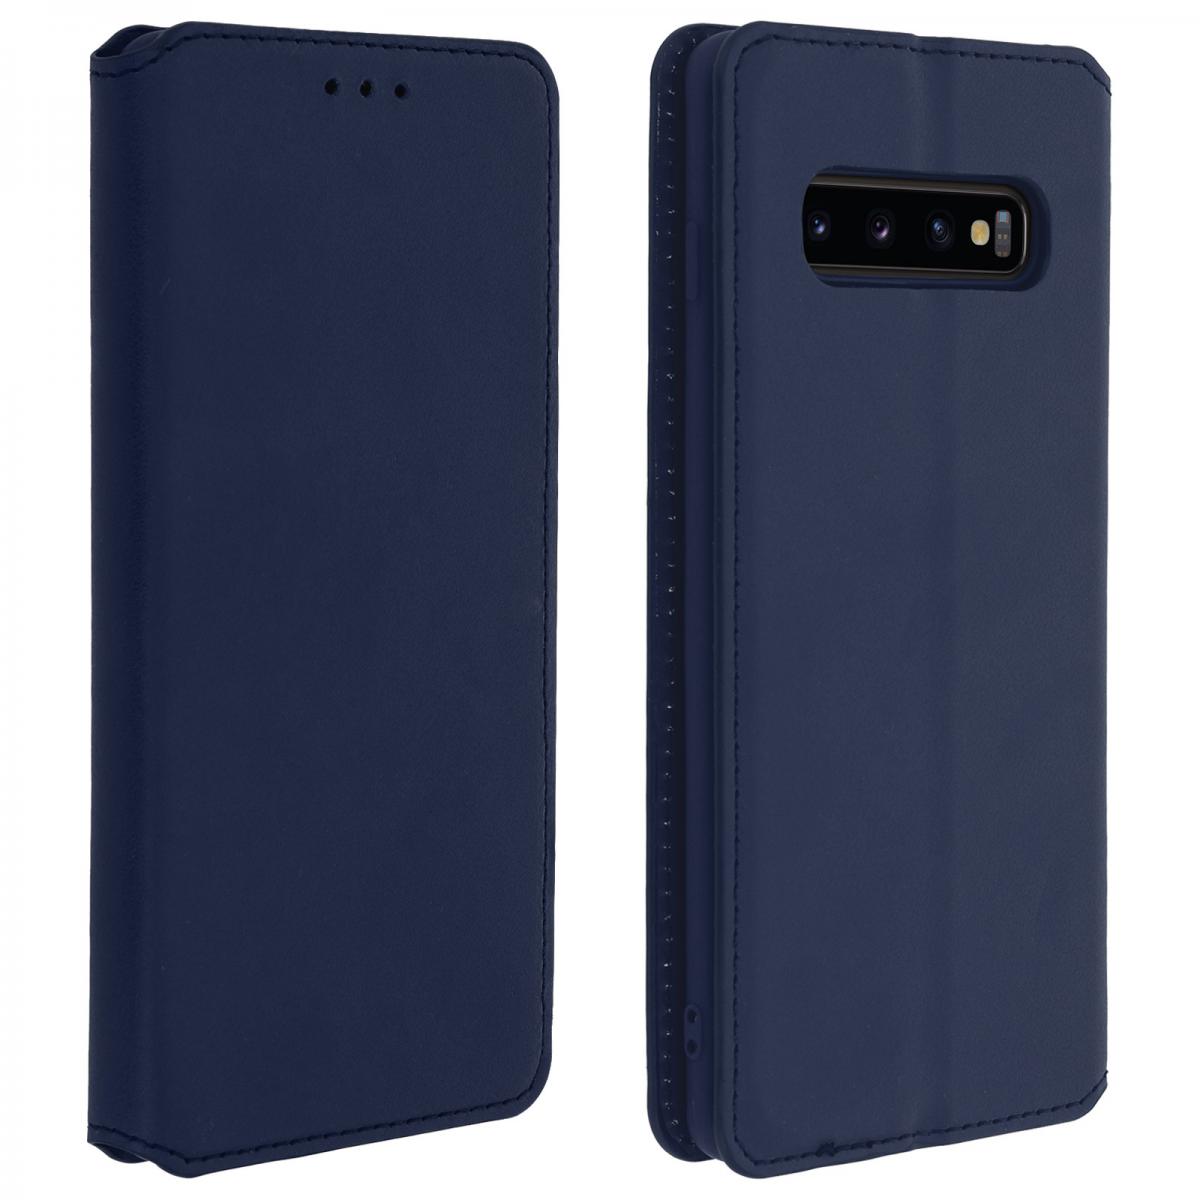 Avizar - Housse Samsung Galaxy S10 Étui Folio Portefeuille Fonction Support - bleu nuit - Coque, étui smartphone